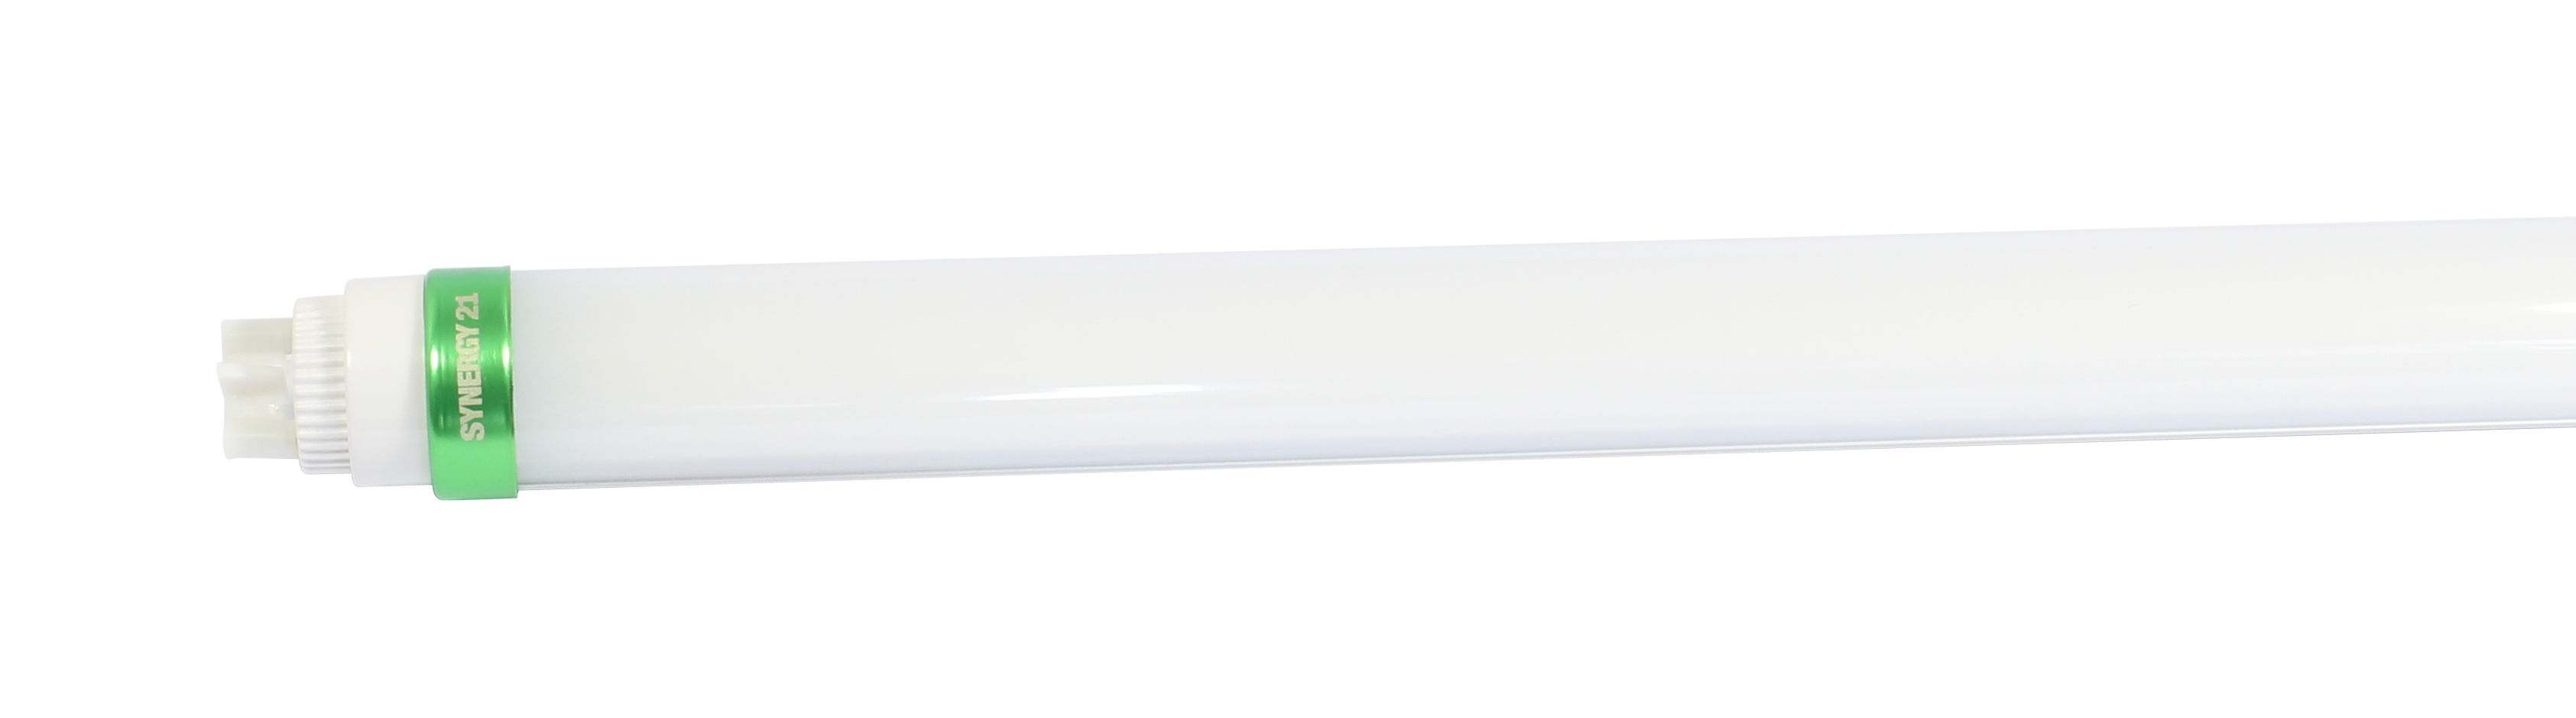 Synergy 21 LED Tube T8 SL Serie  150cm, neutralweiß e-kompatibel